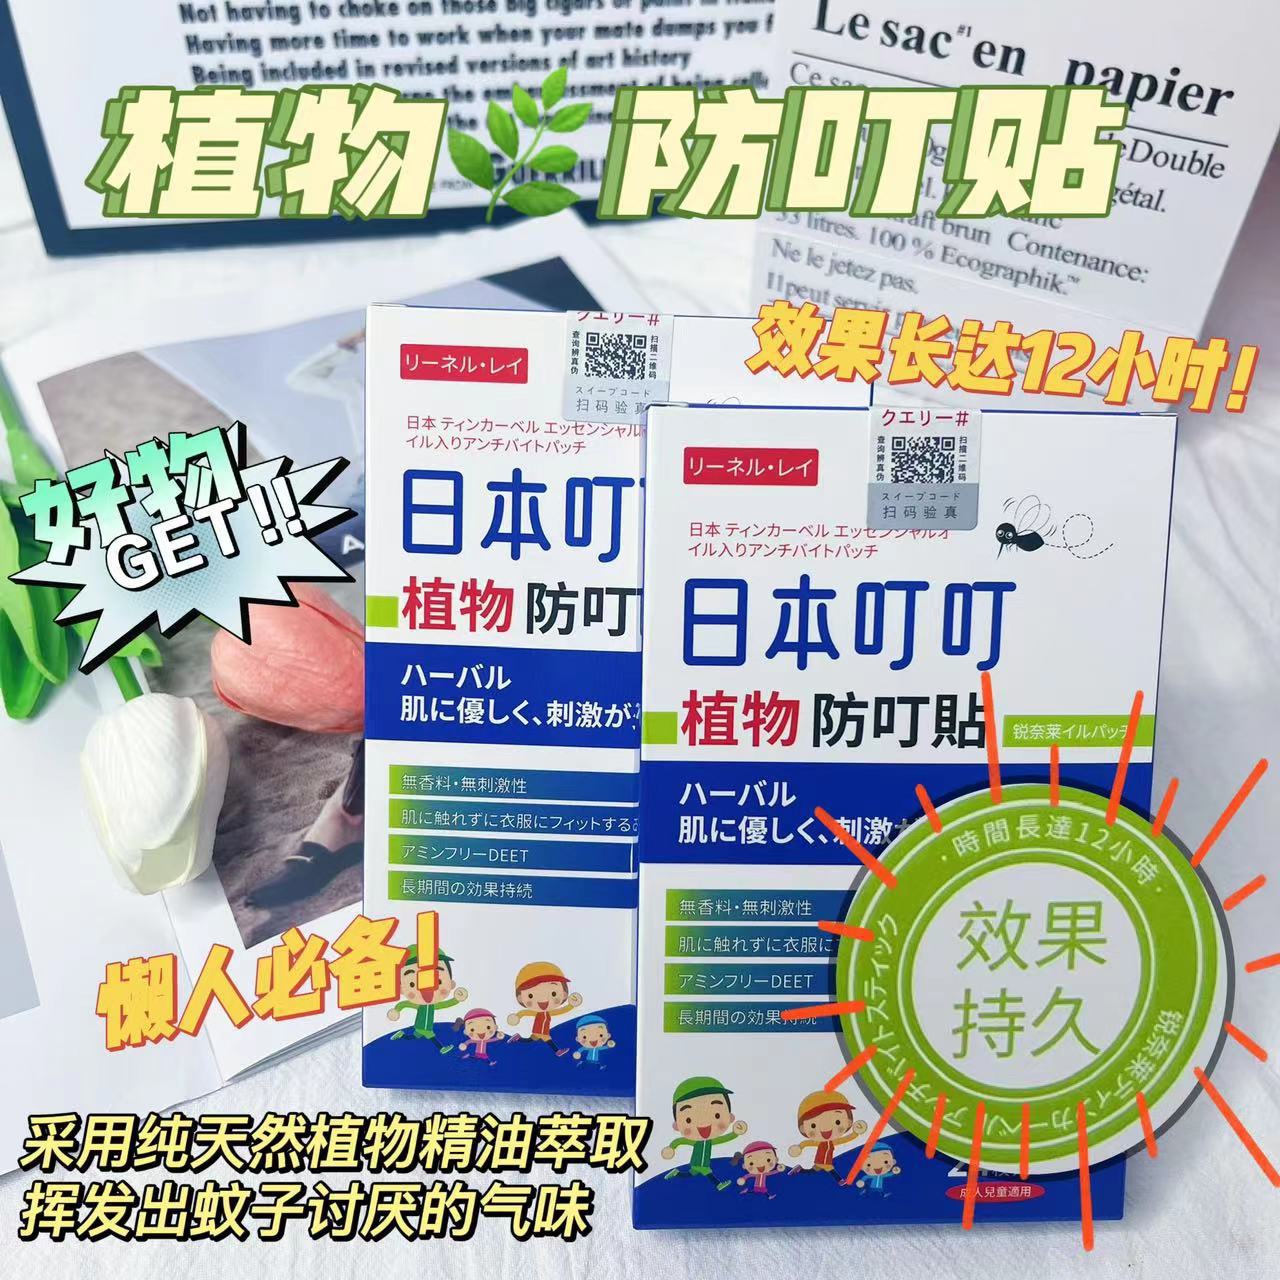 【DG022】 超火爆款高质量日本叮叮驱蚊防蚊贴 ❤️❤️